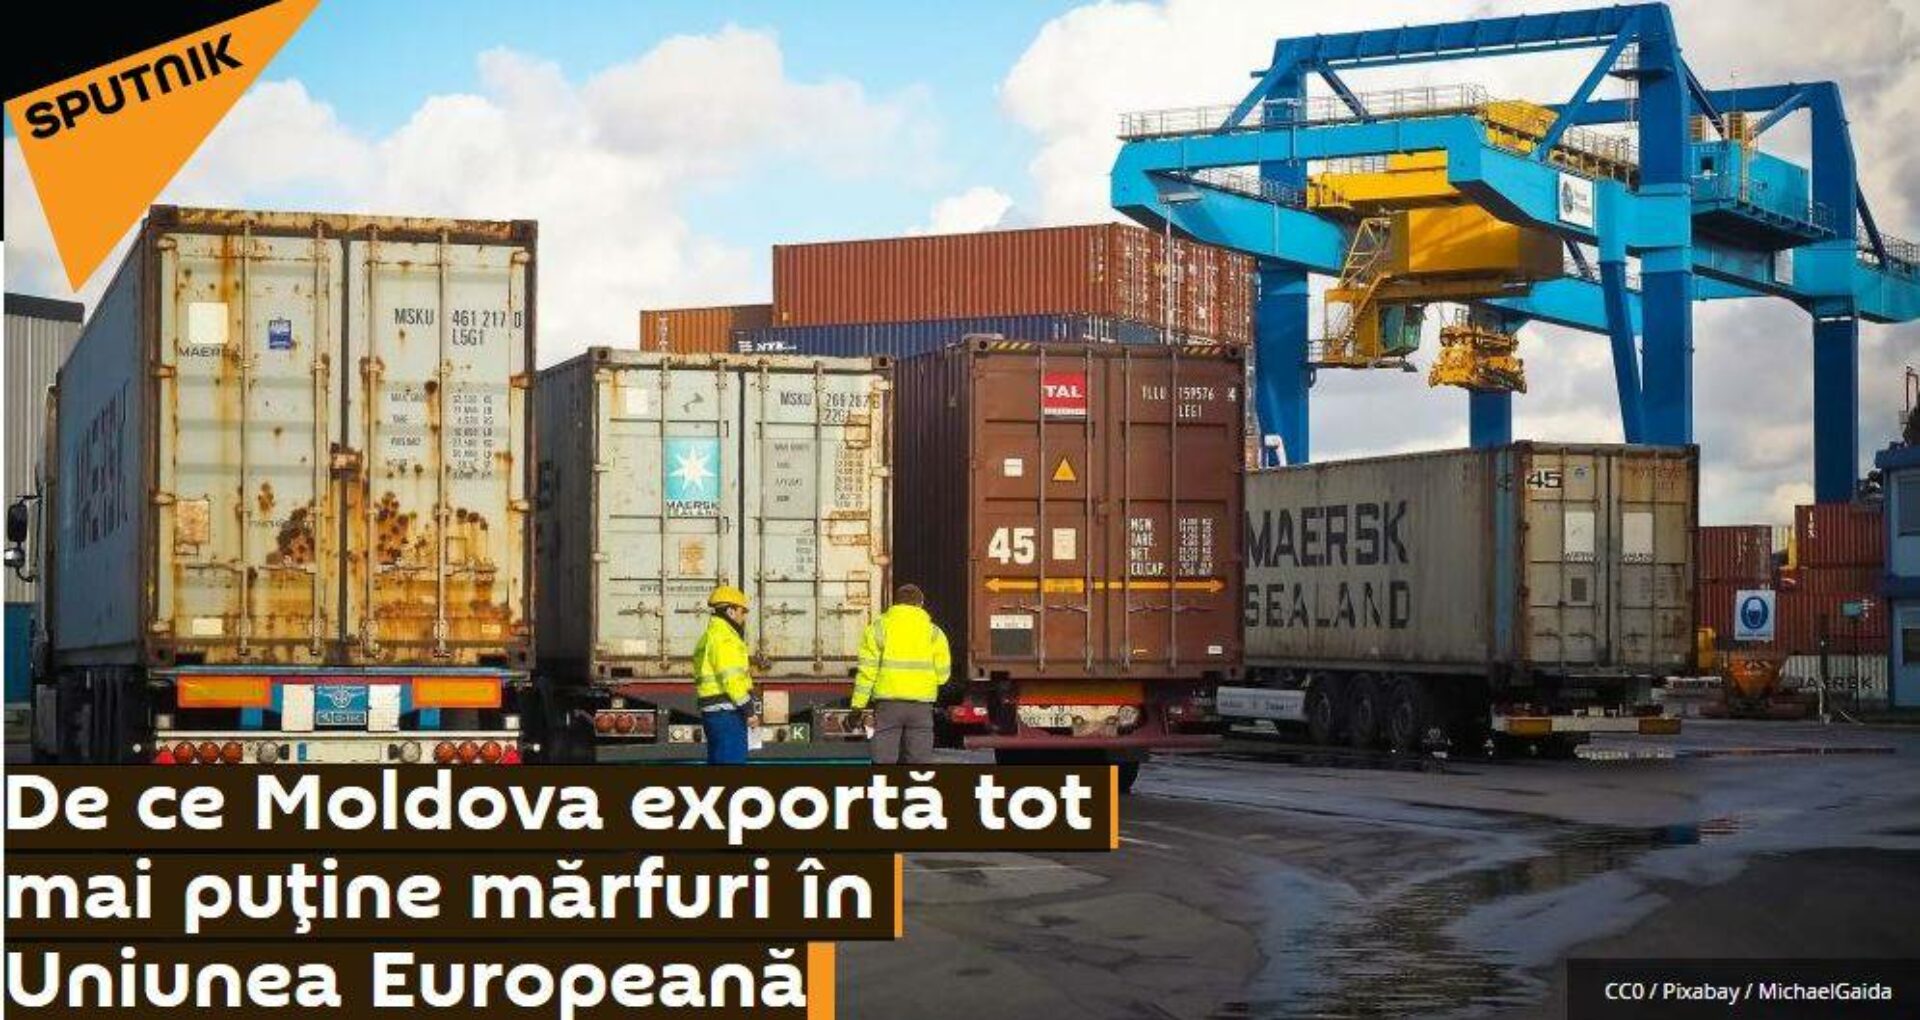 Speculații despre exporturile moldovenești: Sputnik vede scăderea exporturilor în UE, dar nu vede scăderea și mai mare în cazul CSI